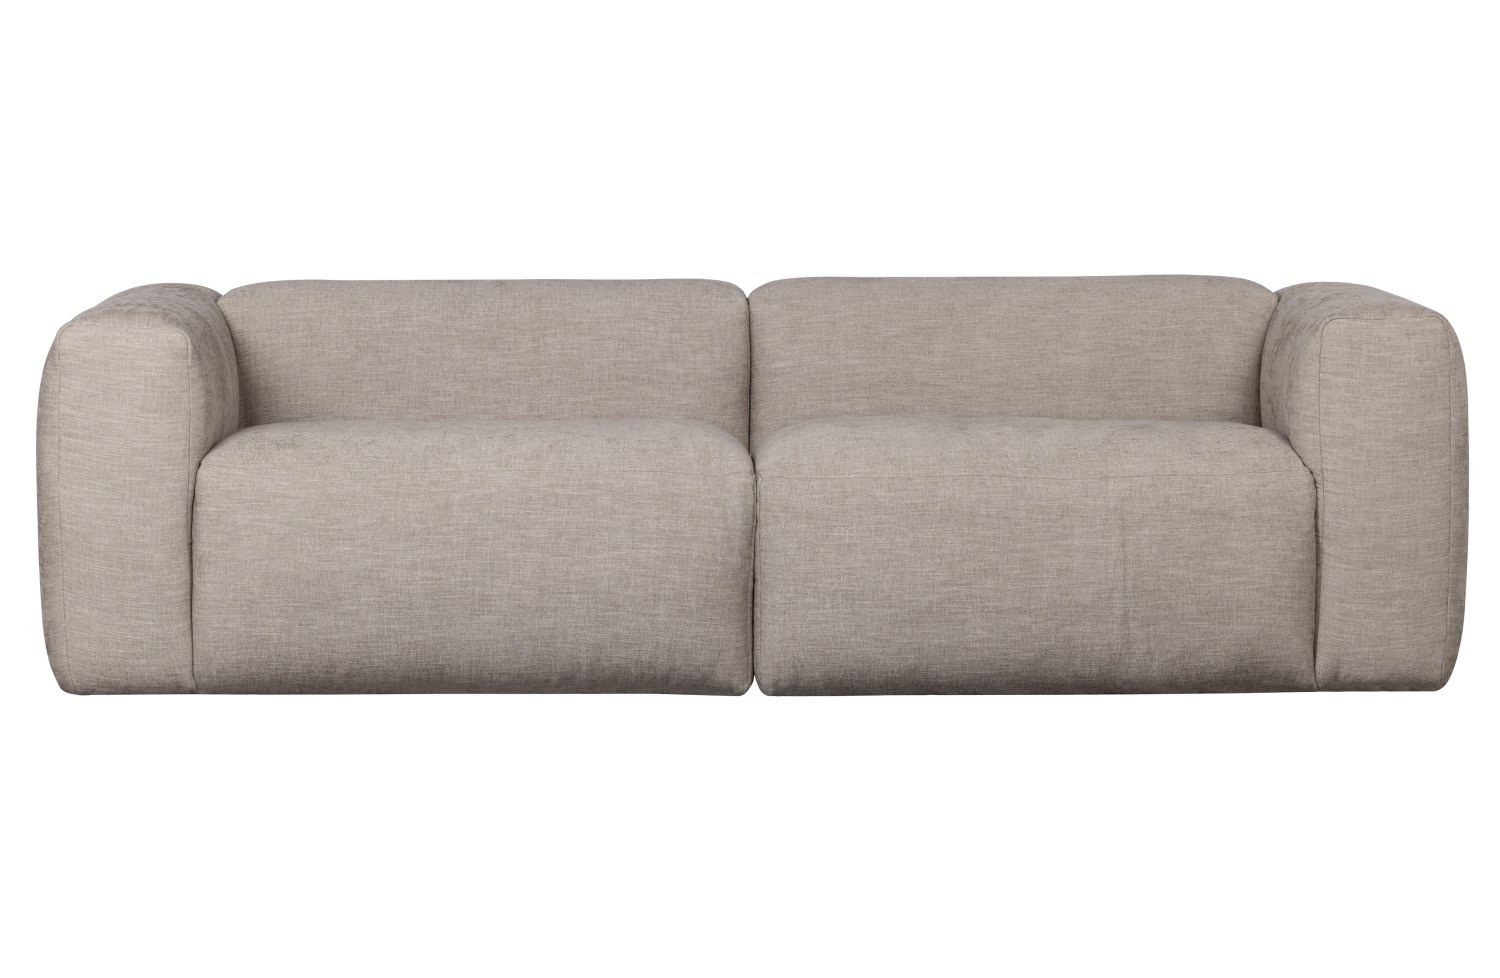 Das Modulsofa Yent als Eck-Element überzeugt mit seinem modernen Design. Gefertigt wurde es aus Webstoff, welcher einen hellgrauen Farbton besitzt. Das Sofa ist in der Ausführung Links. Die Sitzhöhe des Sofas beträgt 47 cm.